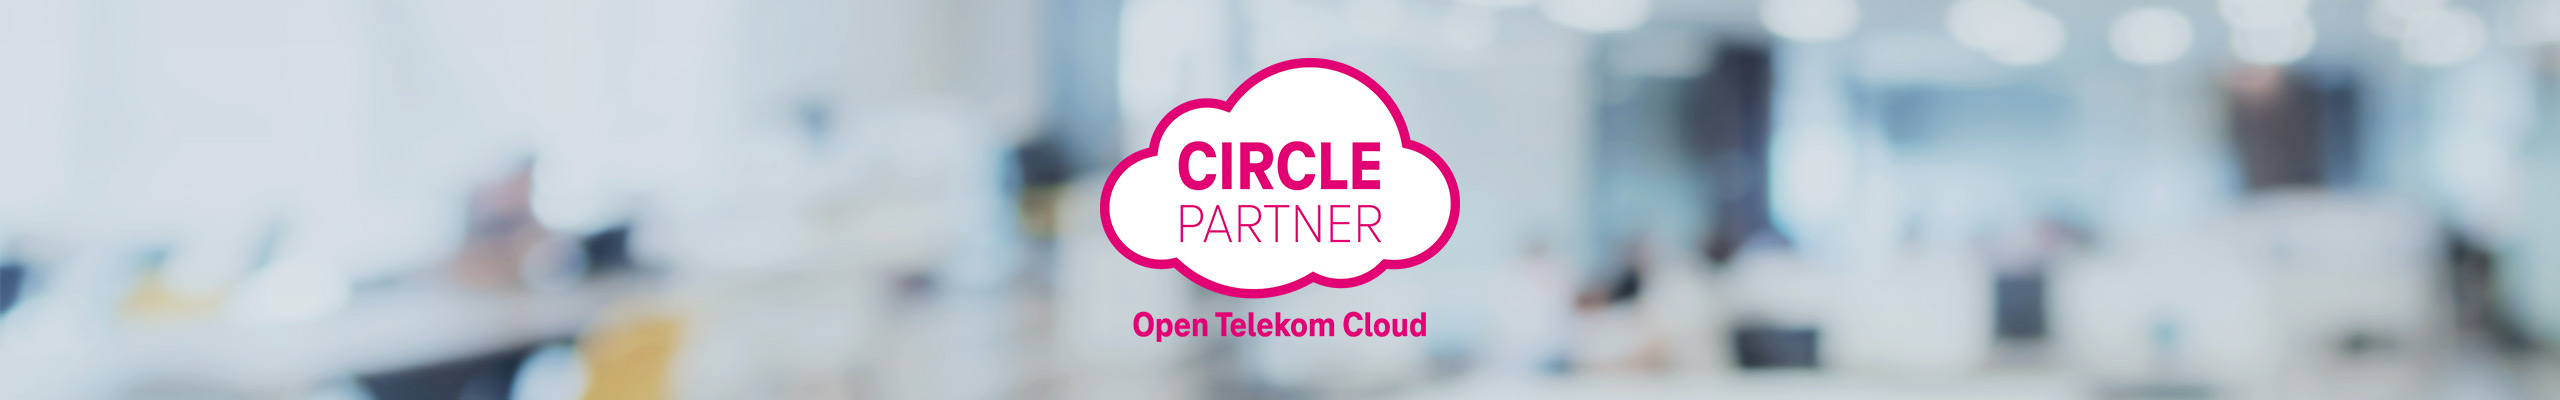 Logo der Circle Partner